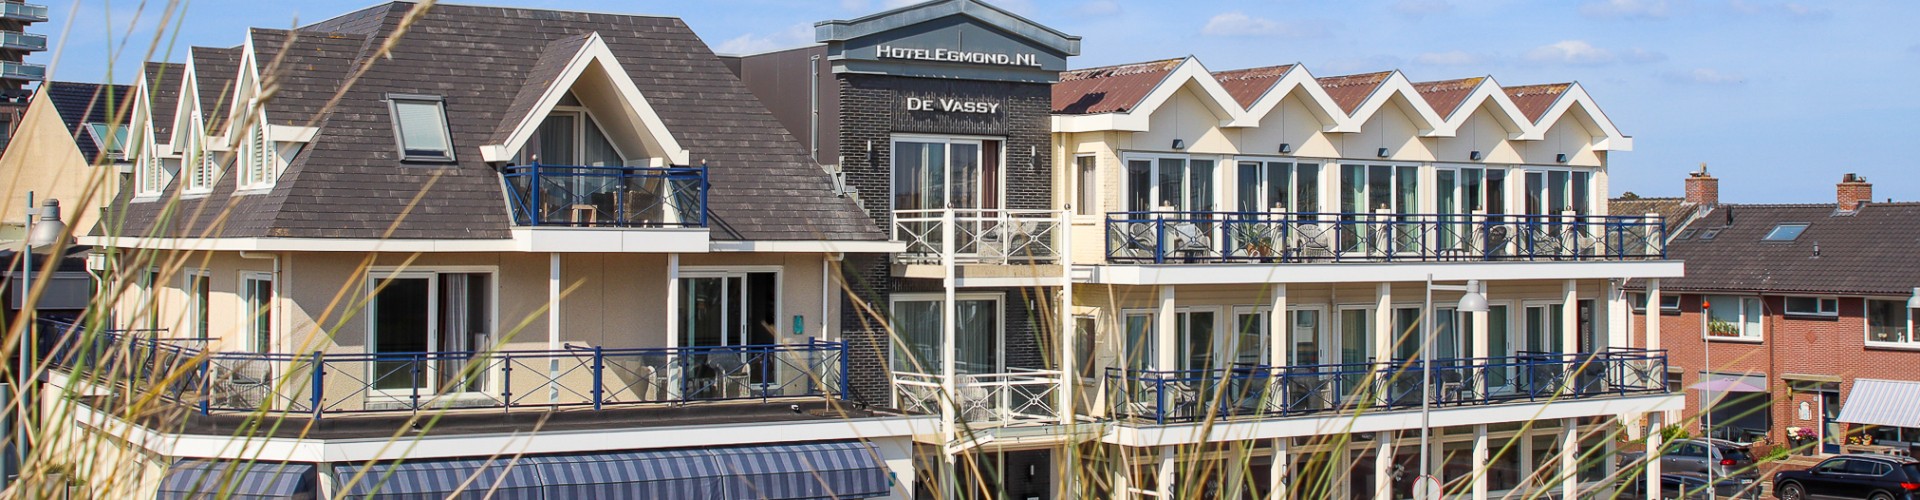 Hotel de Vassy | Voorkant vanuit de duinen